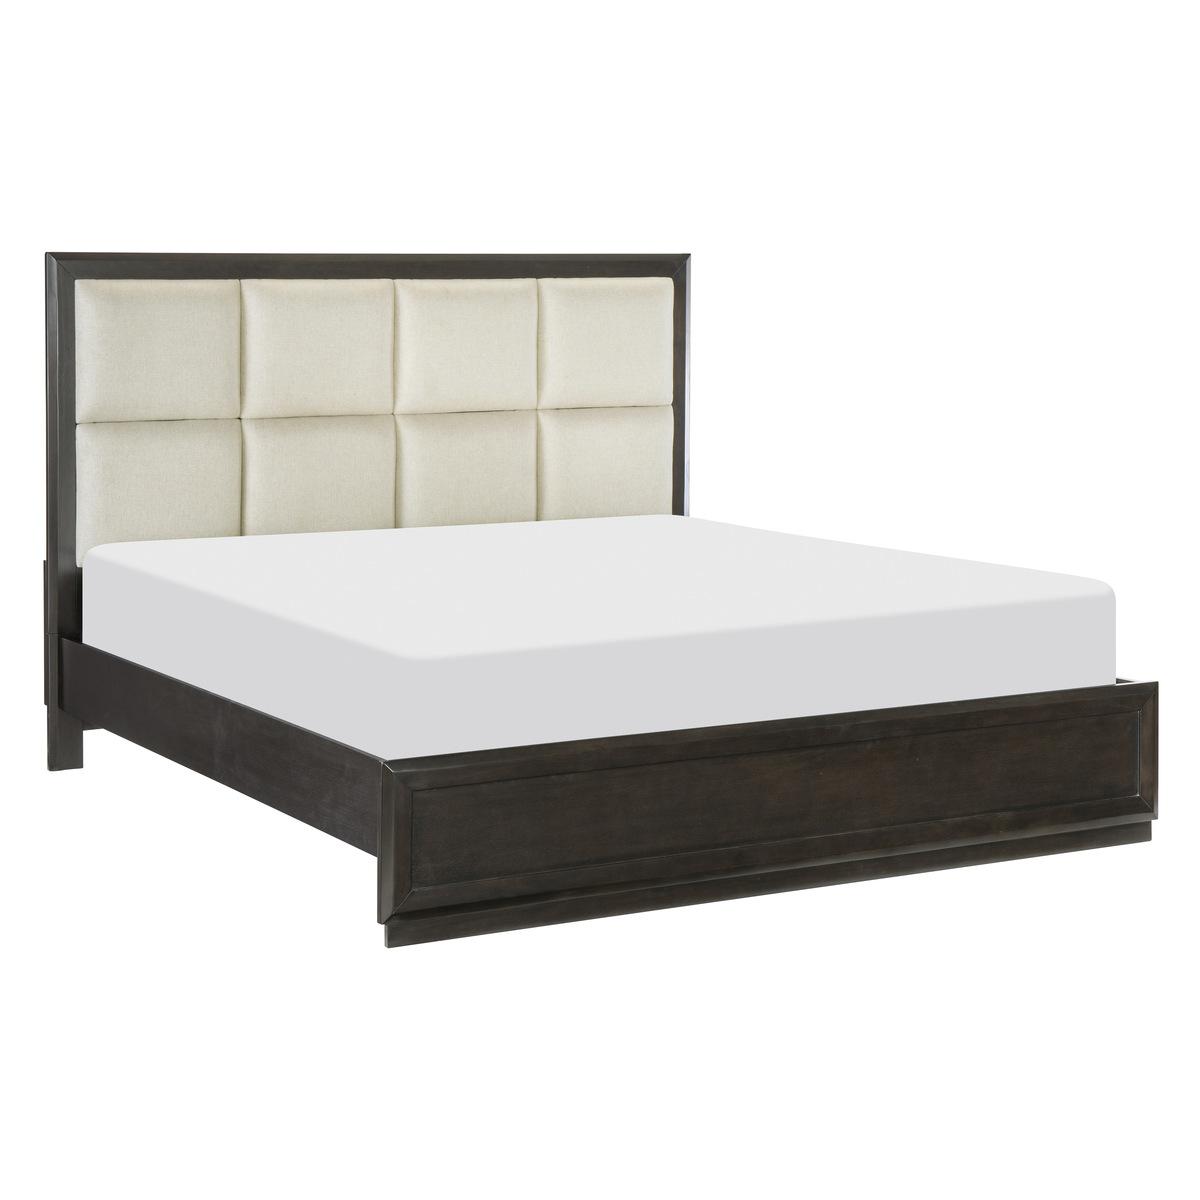 

    
Transitional Dark Charcoal Solid Wood King Bedroom Set 5pcs Homelegance 1575K-1EK* Hodgin
